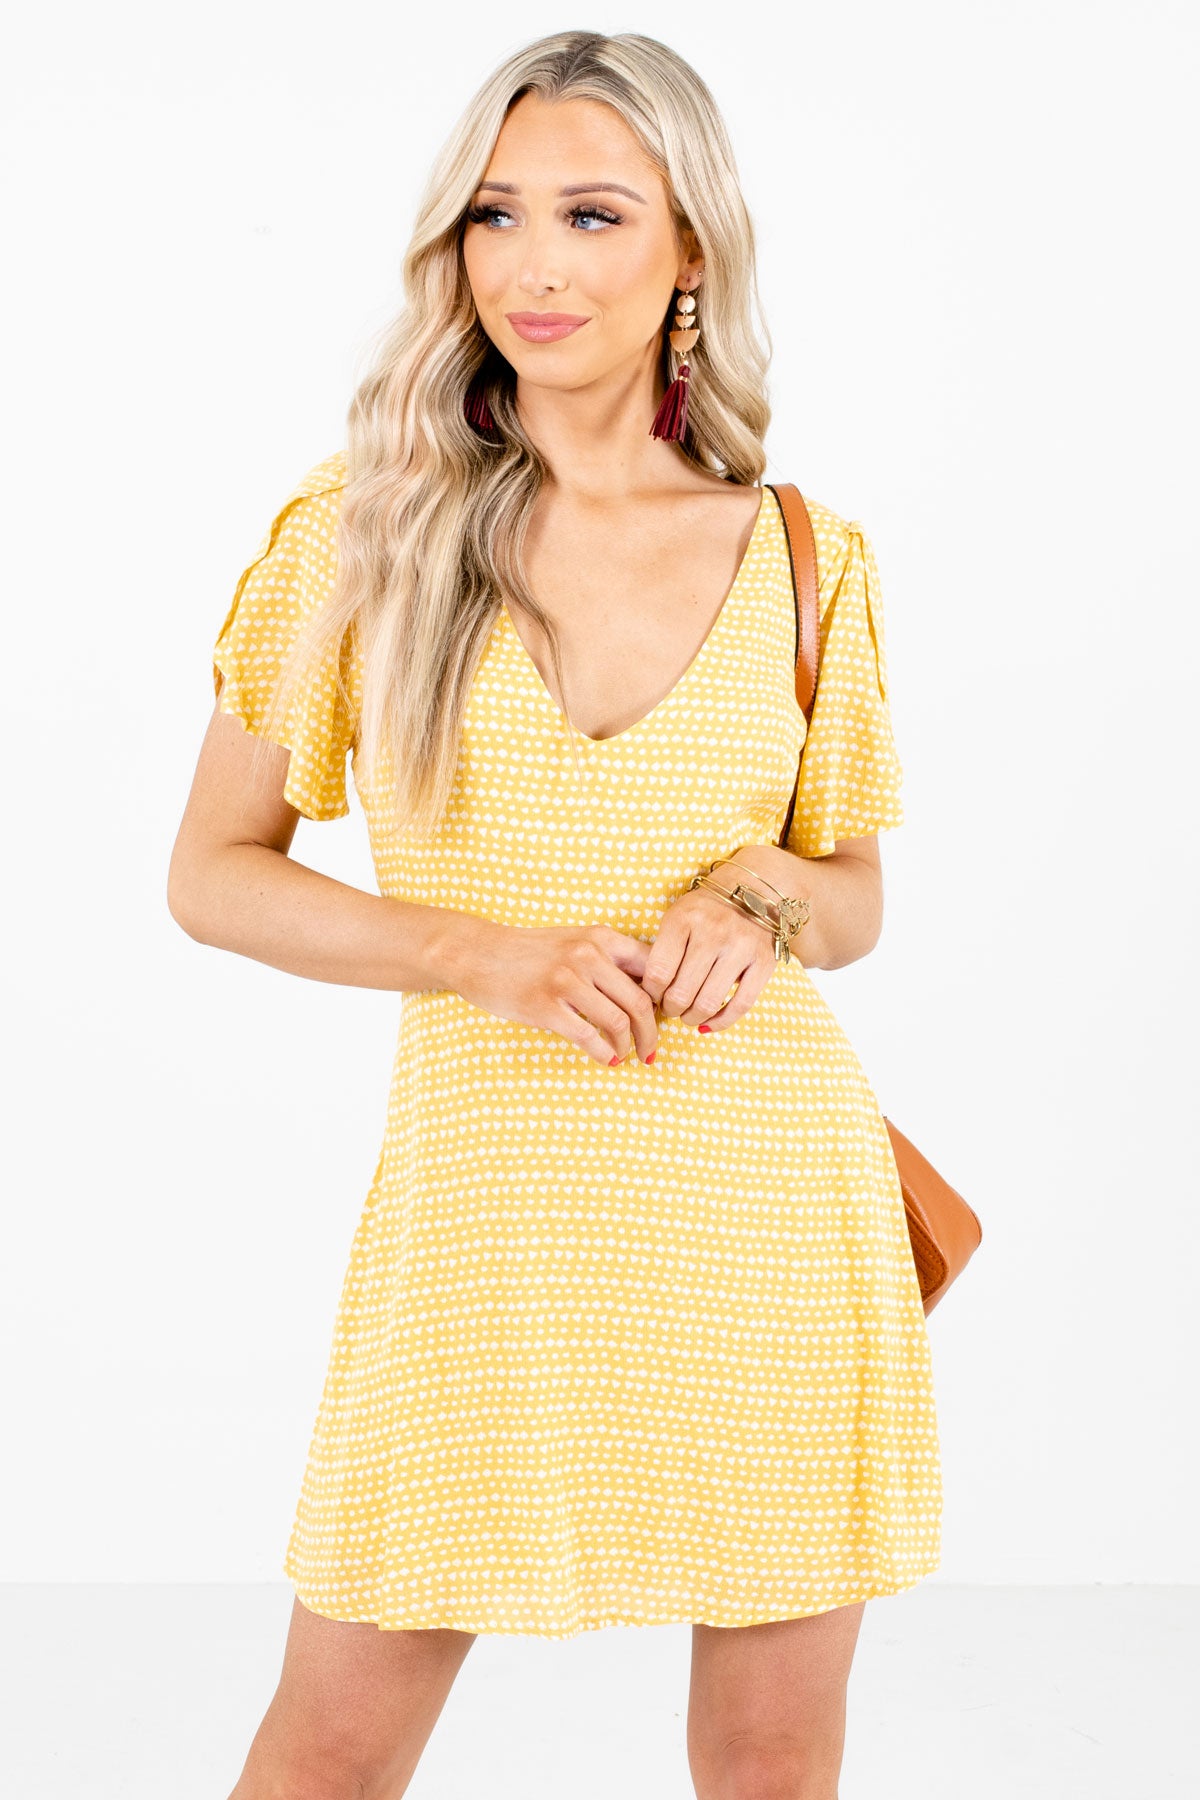 yellow patterned dress